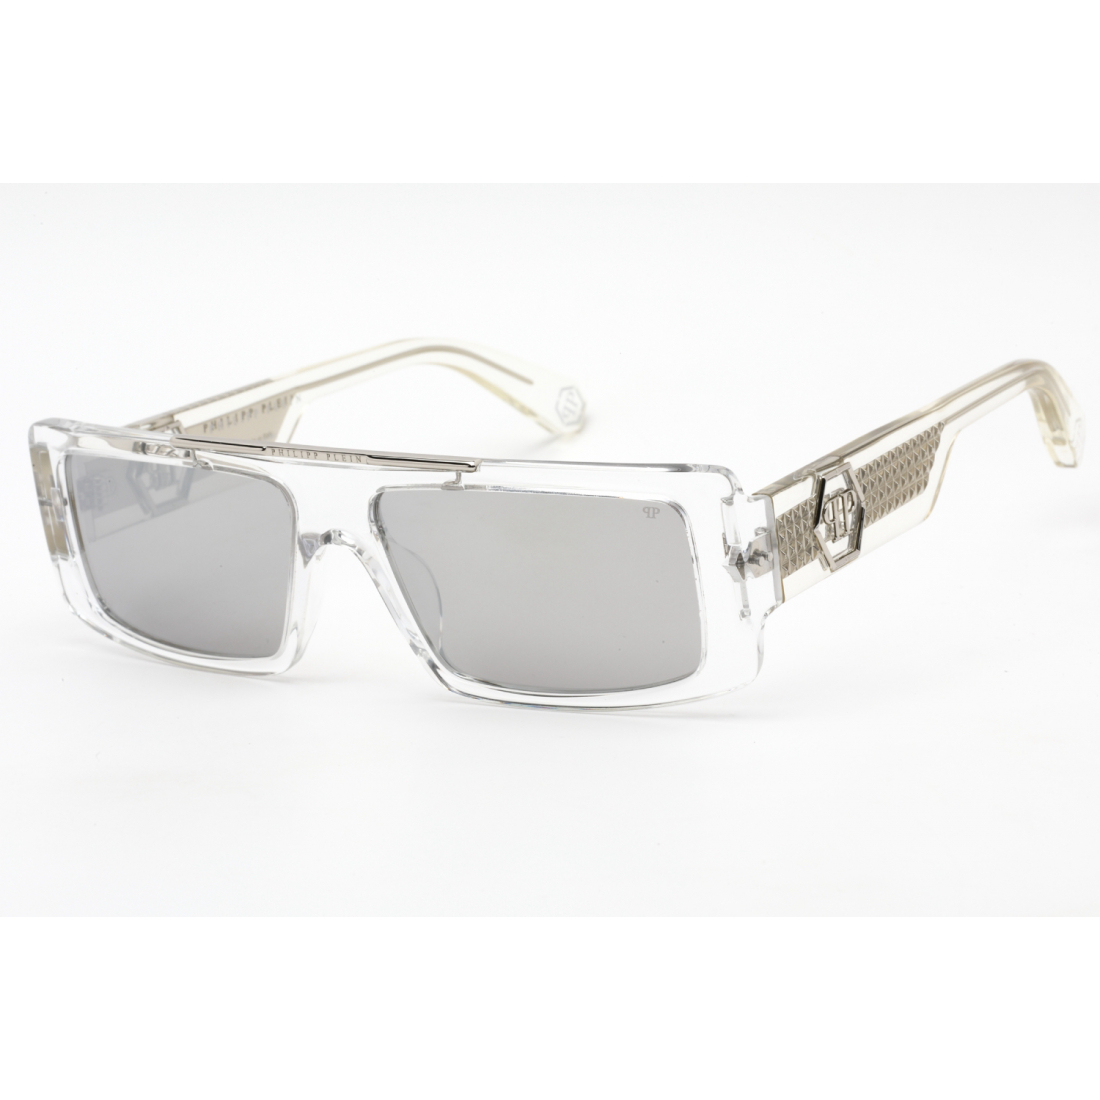 Men's 'SPP003V' Sunglasses